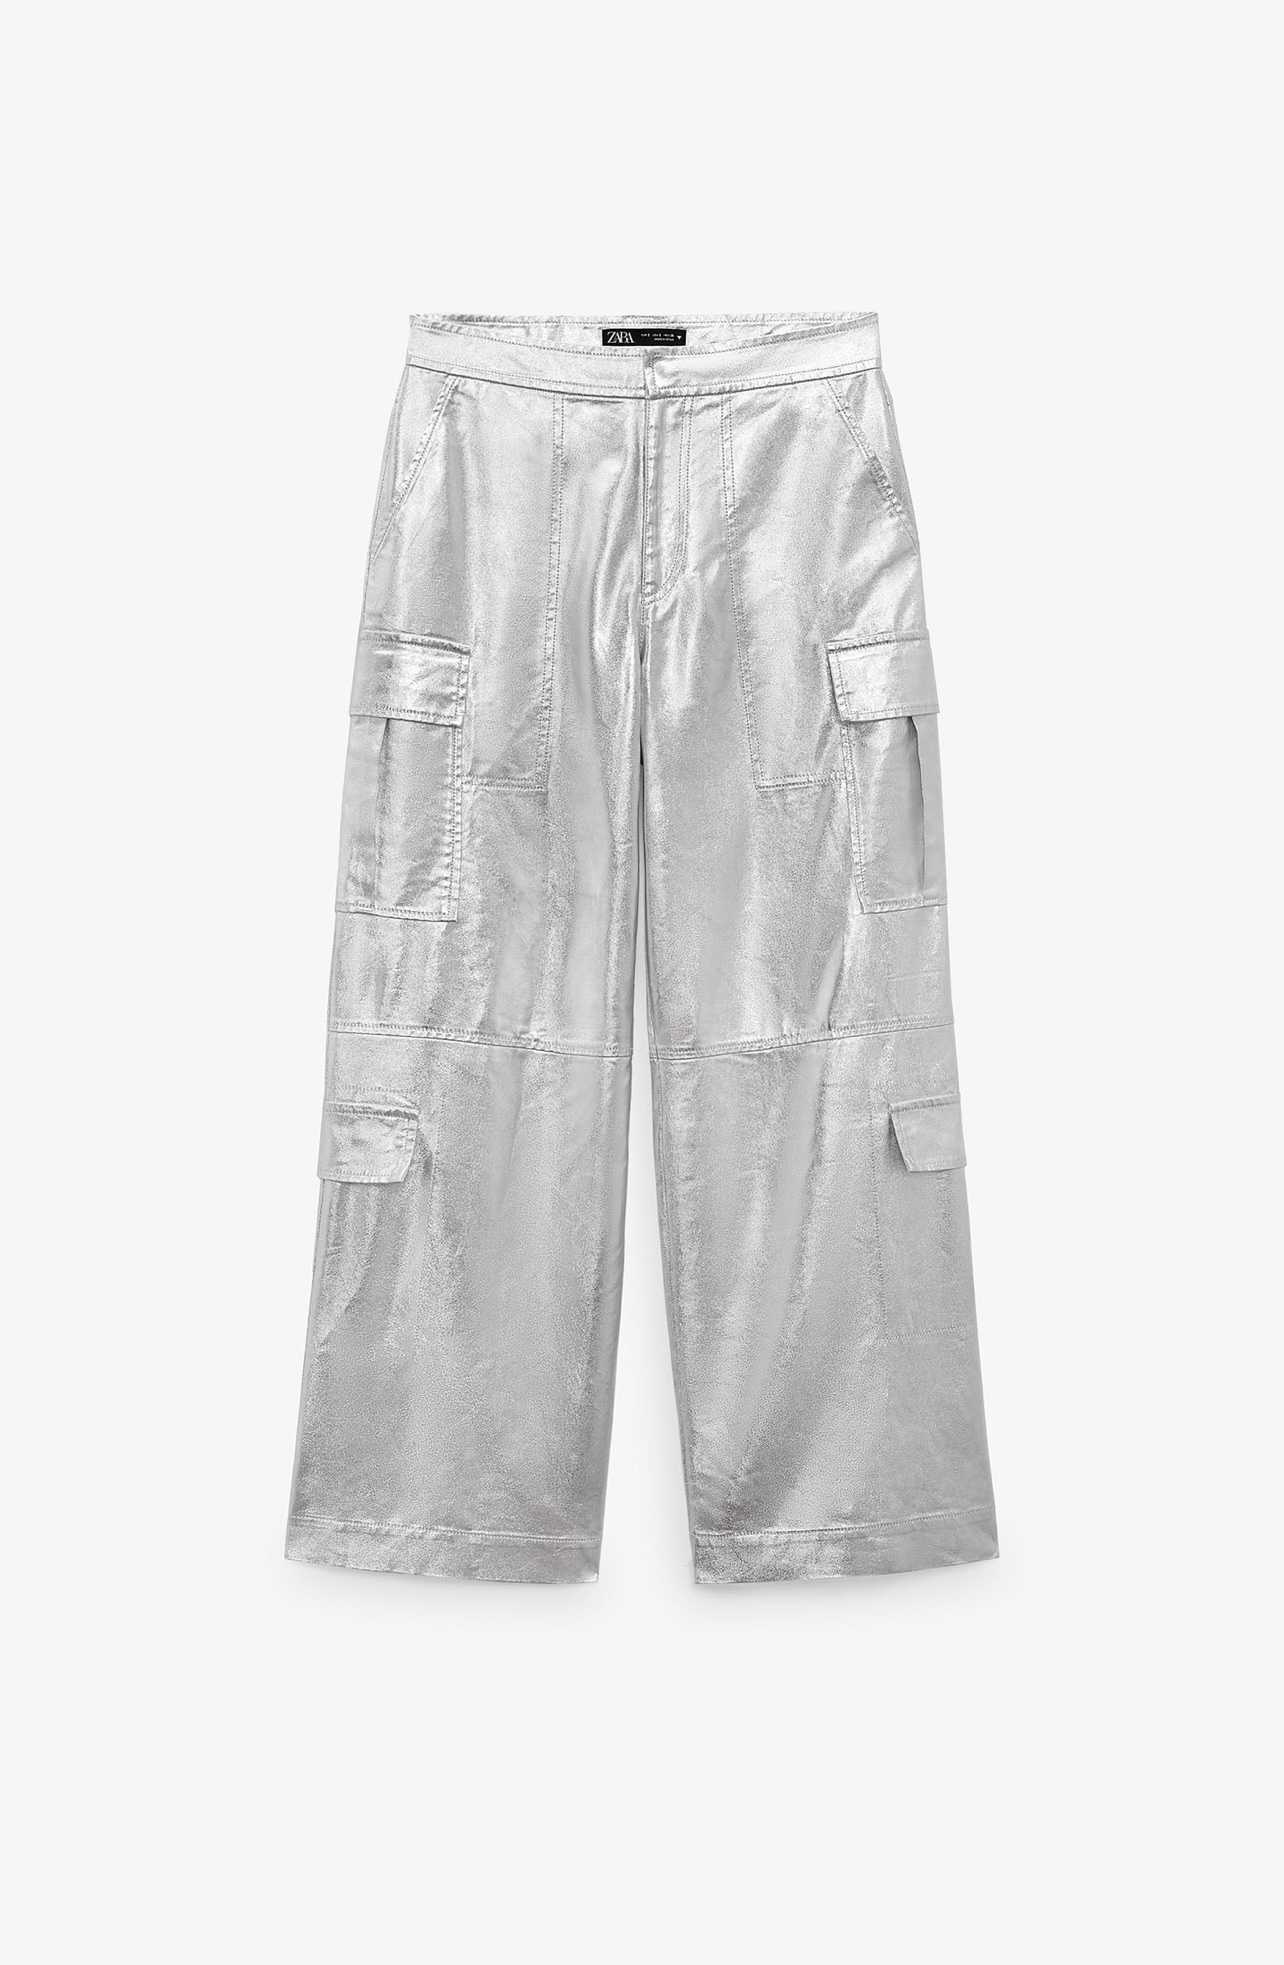 Pantalón cargo metalizado de Zara (49.95 euros)